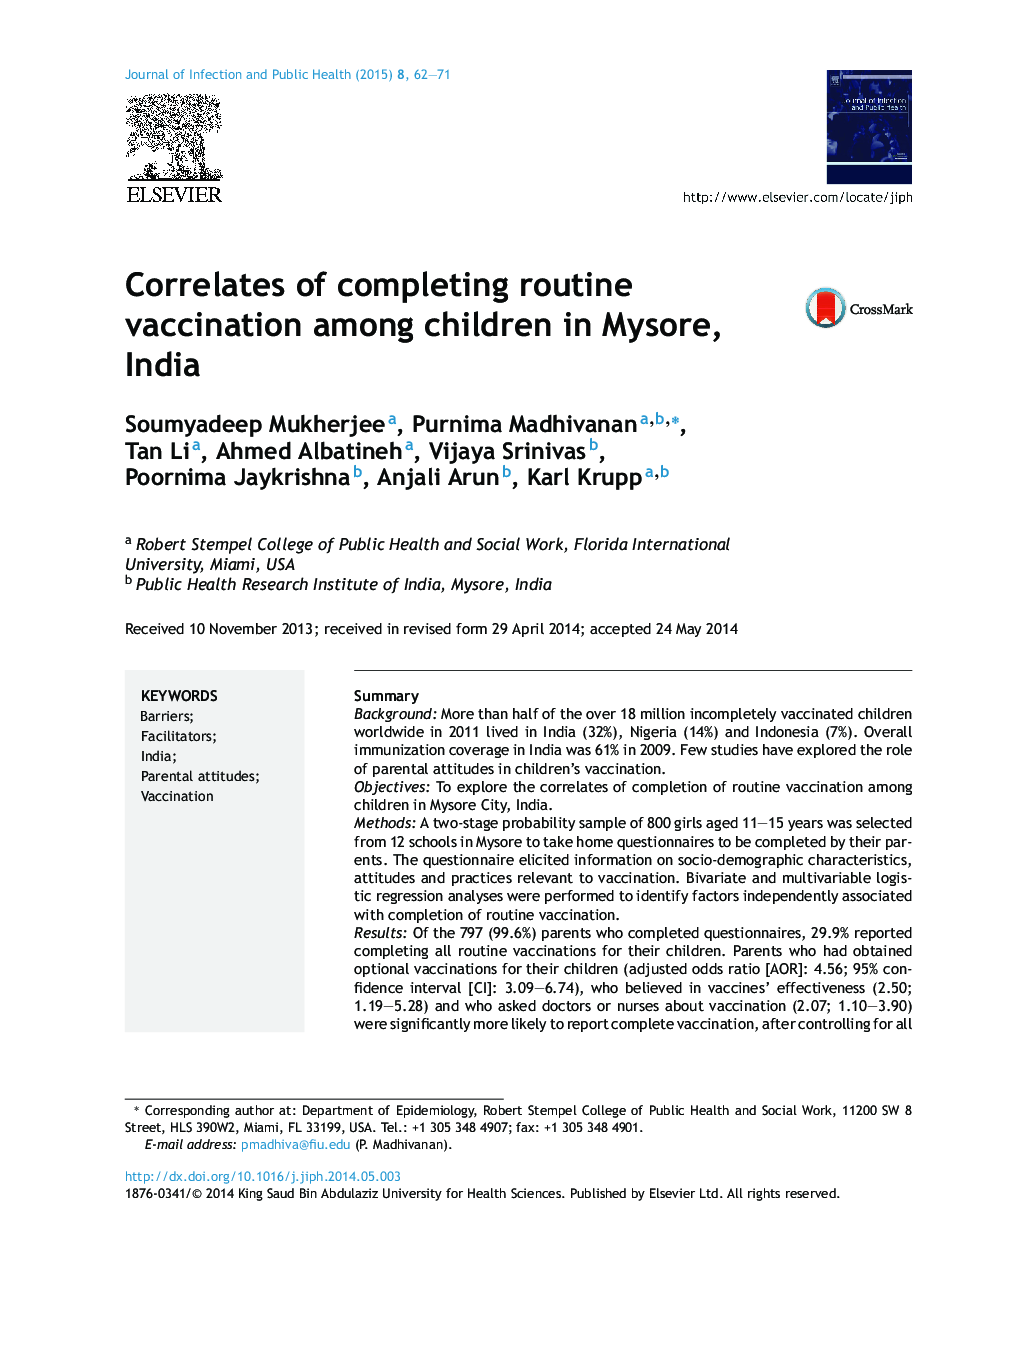 مرتبط با تکمیل واکسیناسیون روتین در میان کودکان در میسور، هند 